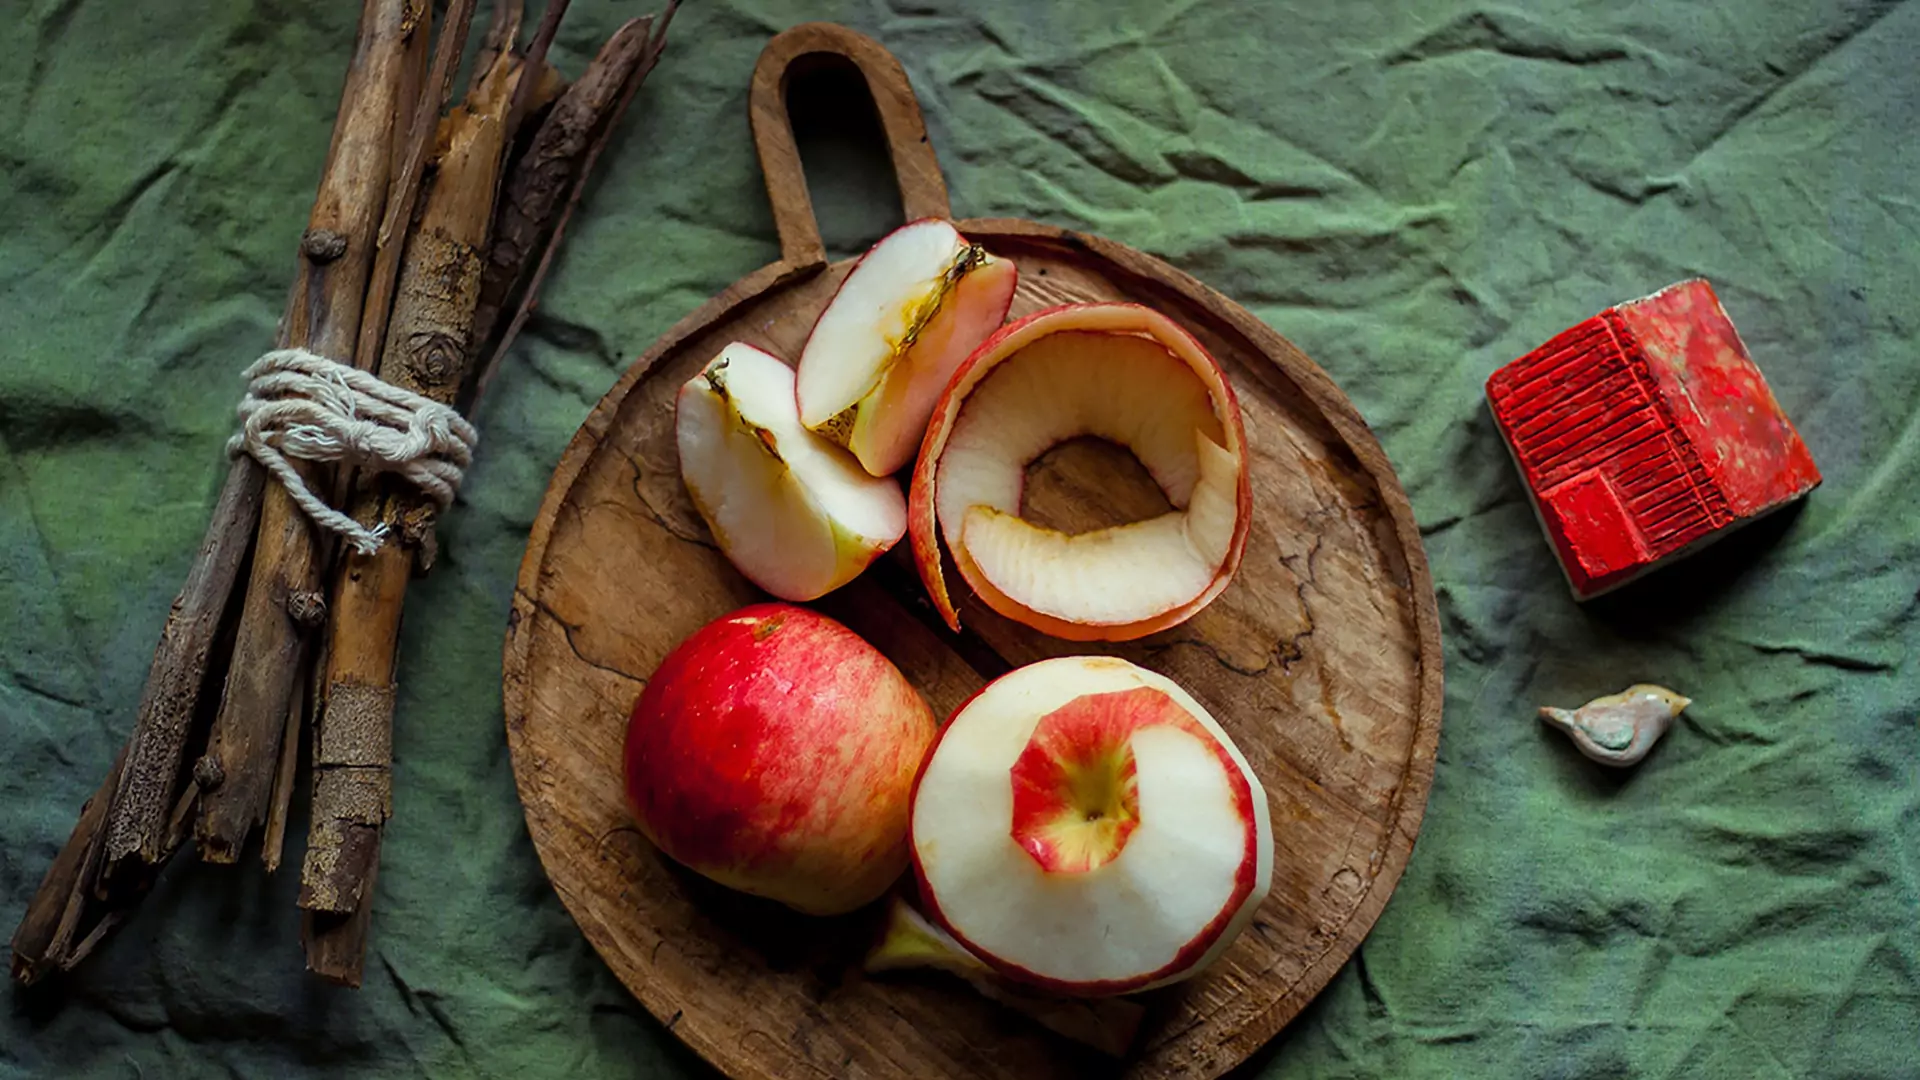 Jabłko – owoc zero waste. Cztery ciekawe sposoby na wykorzystanie skórek i gniazd nasiennych